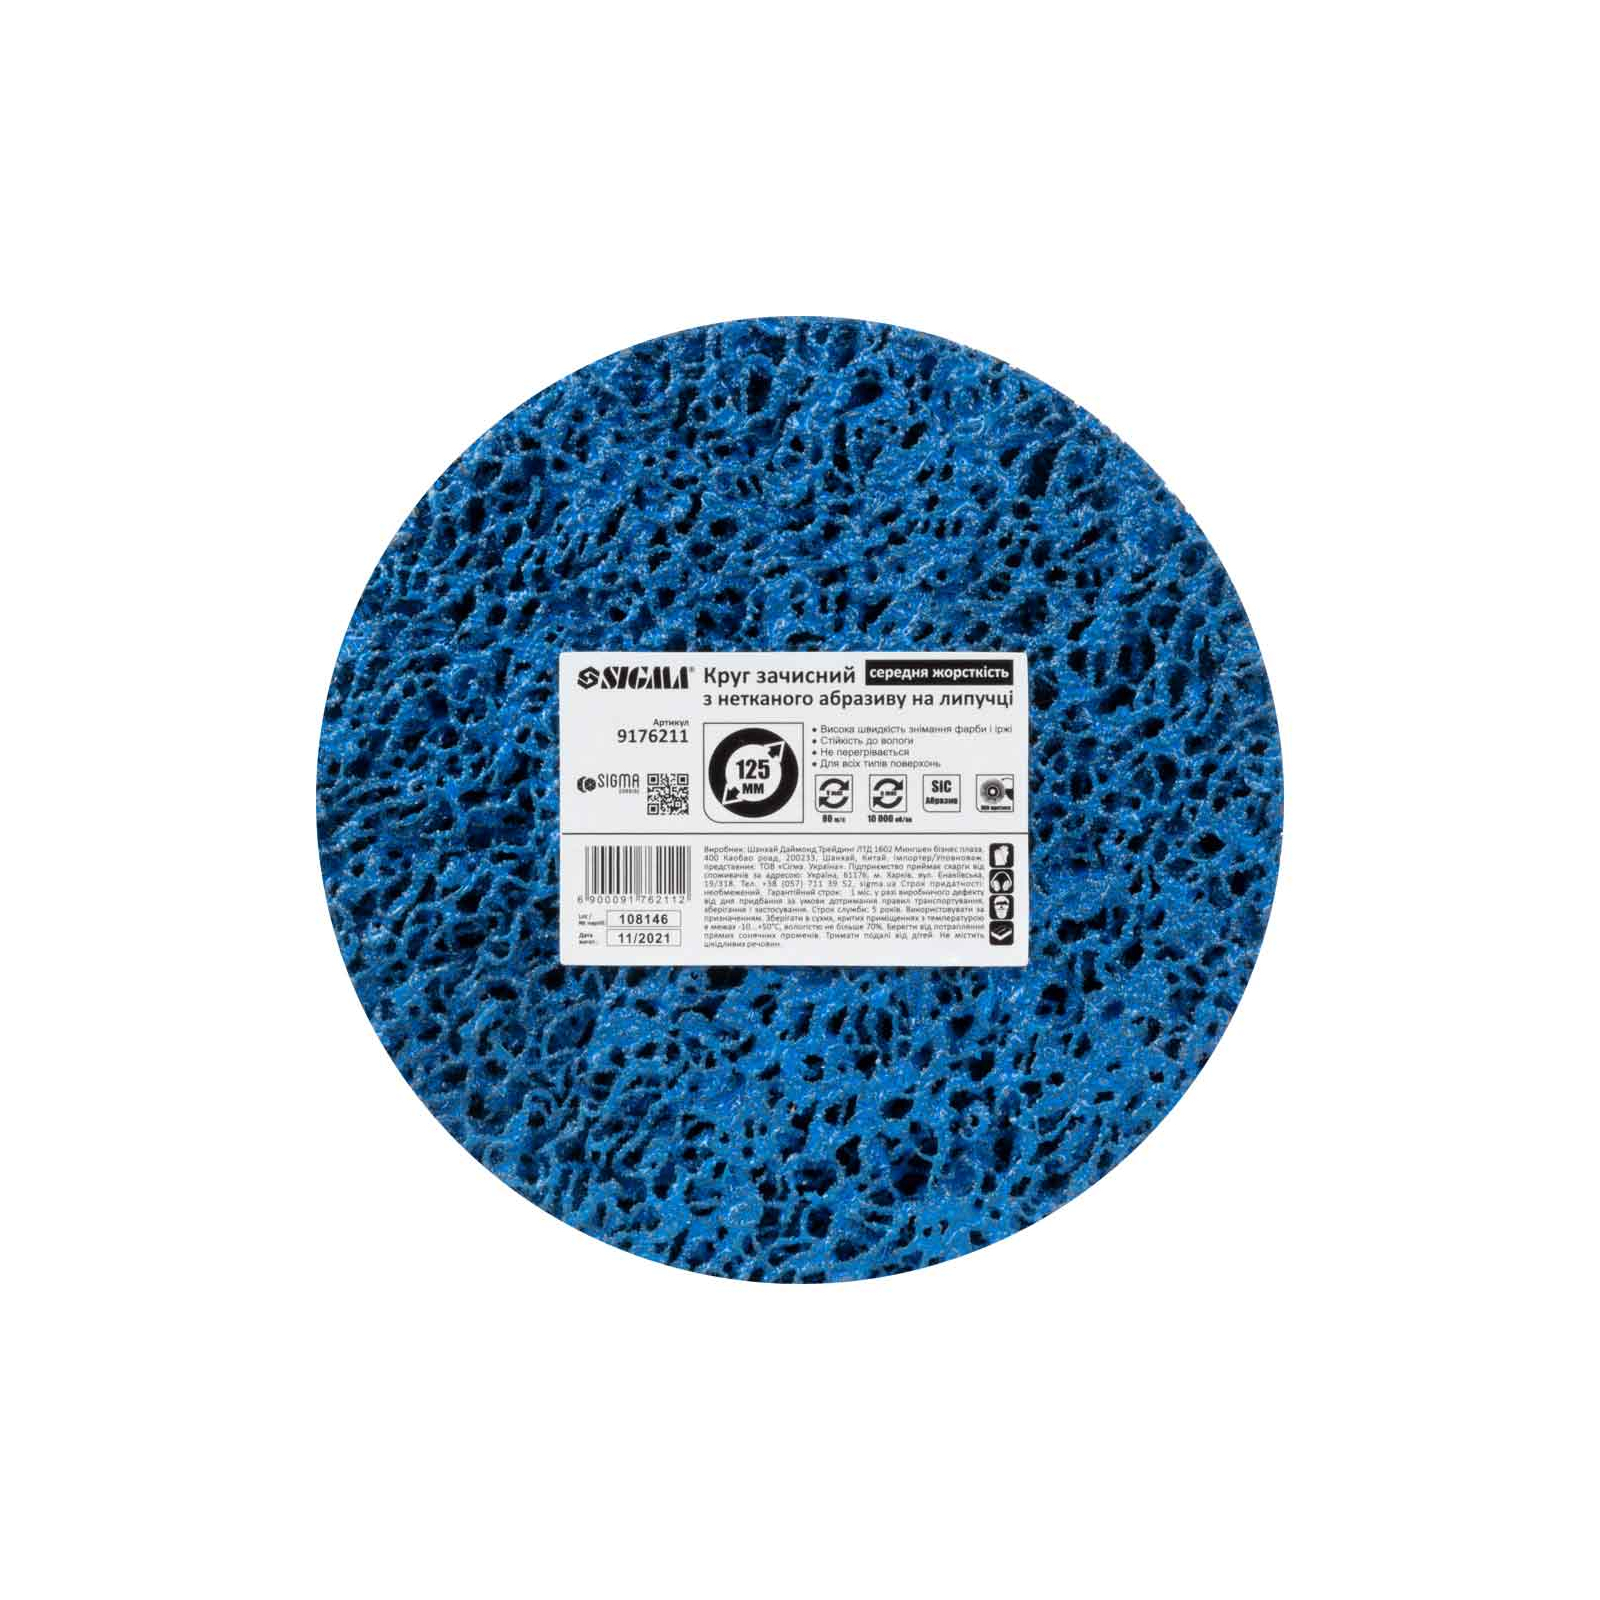 Круг зачистной Sigma из нетканого абразива (коралл) 125мм на липучке синий средняя жесткость (9176211) изображение 6